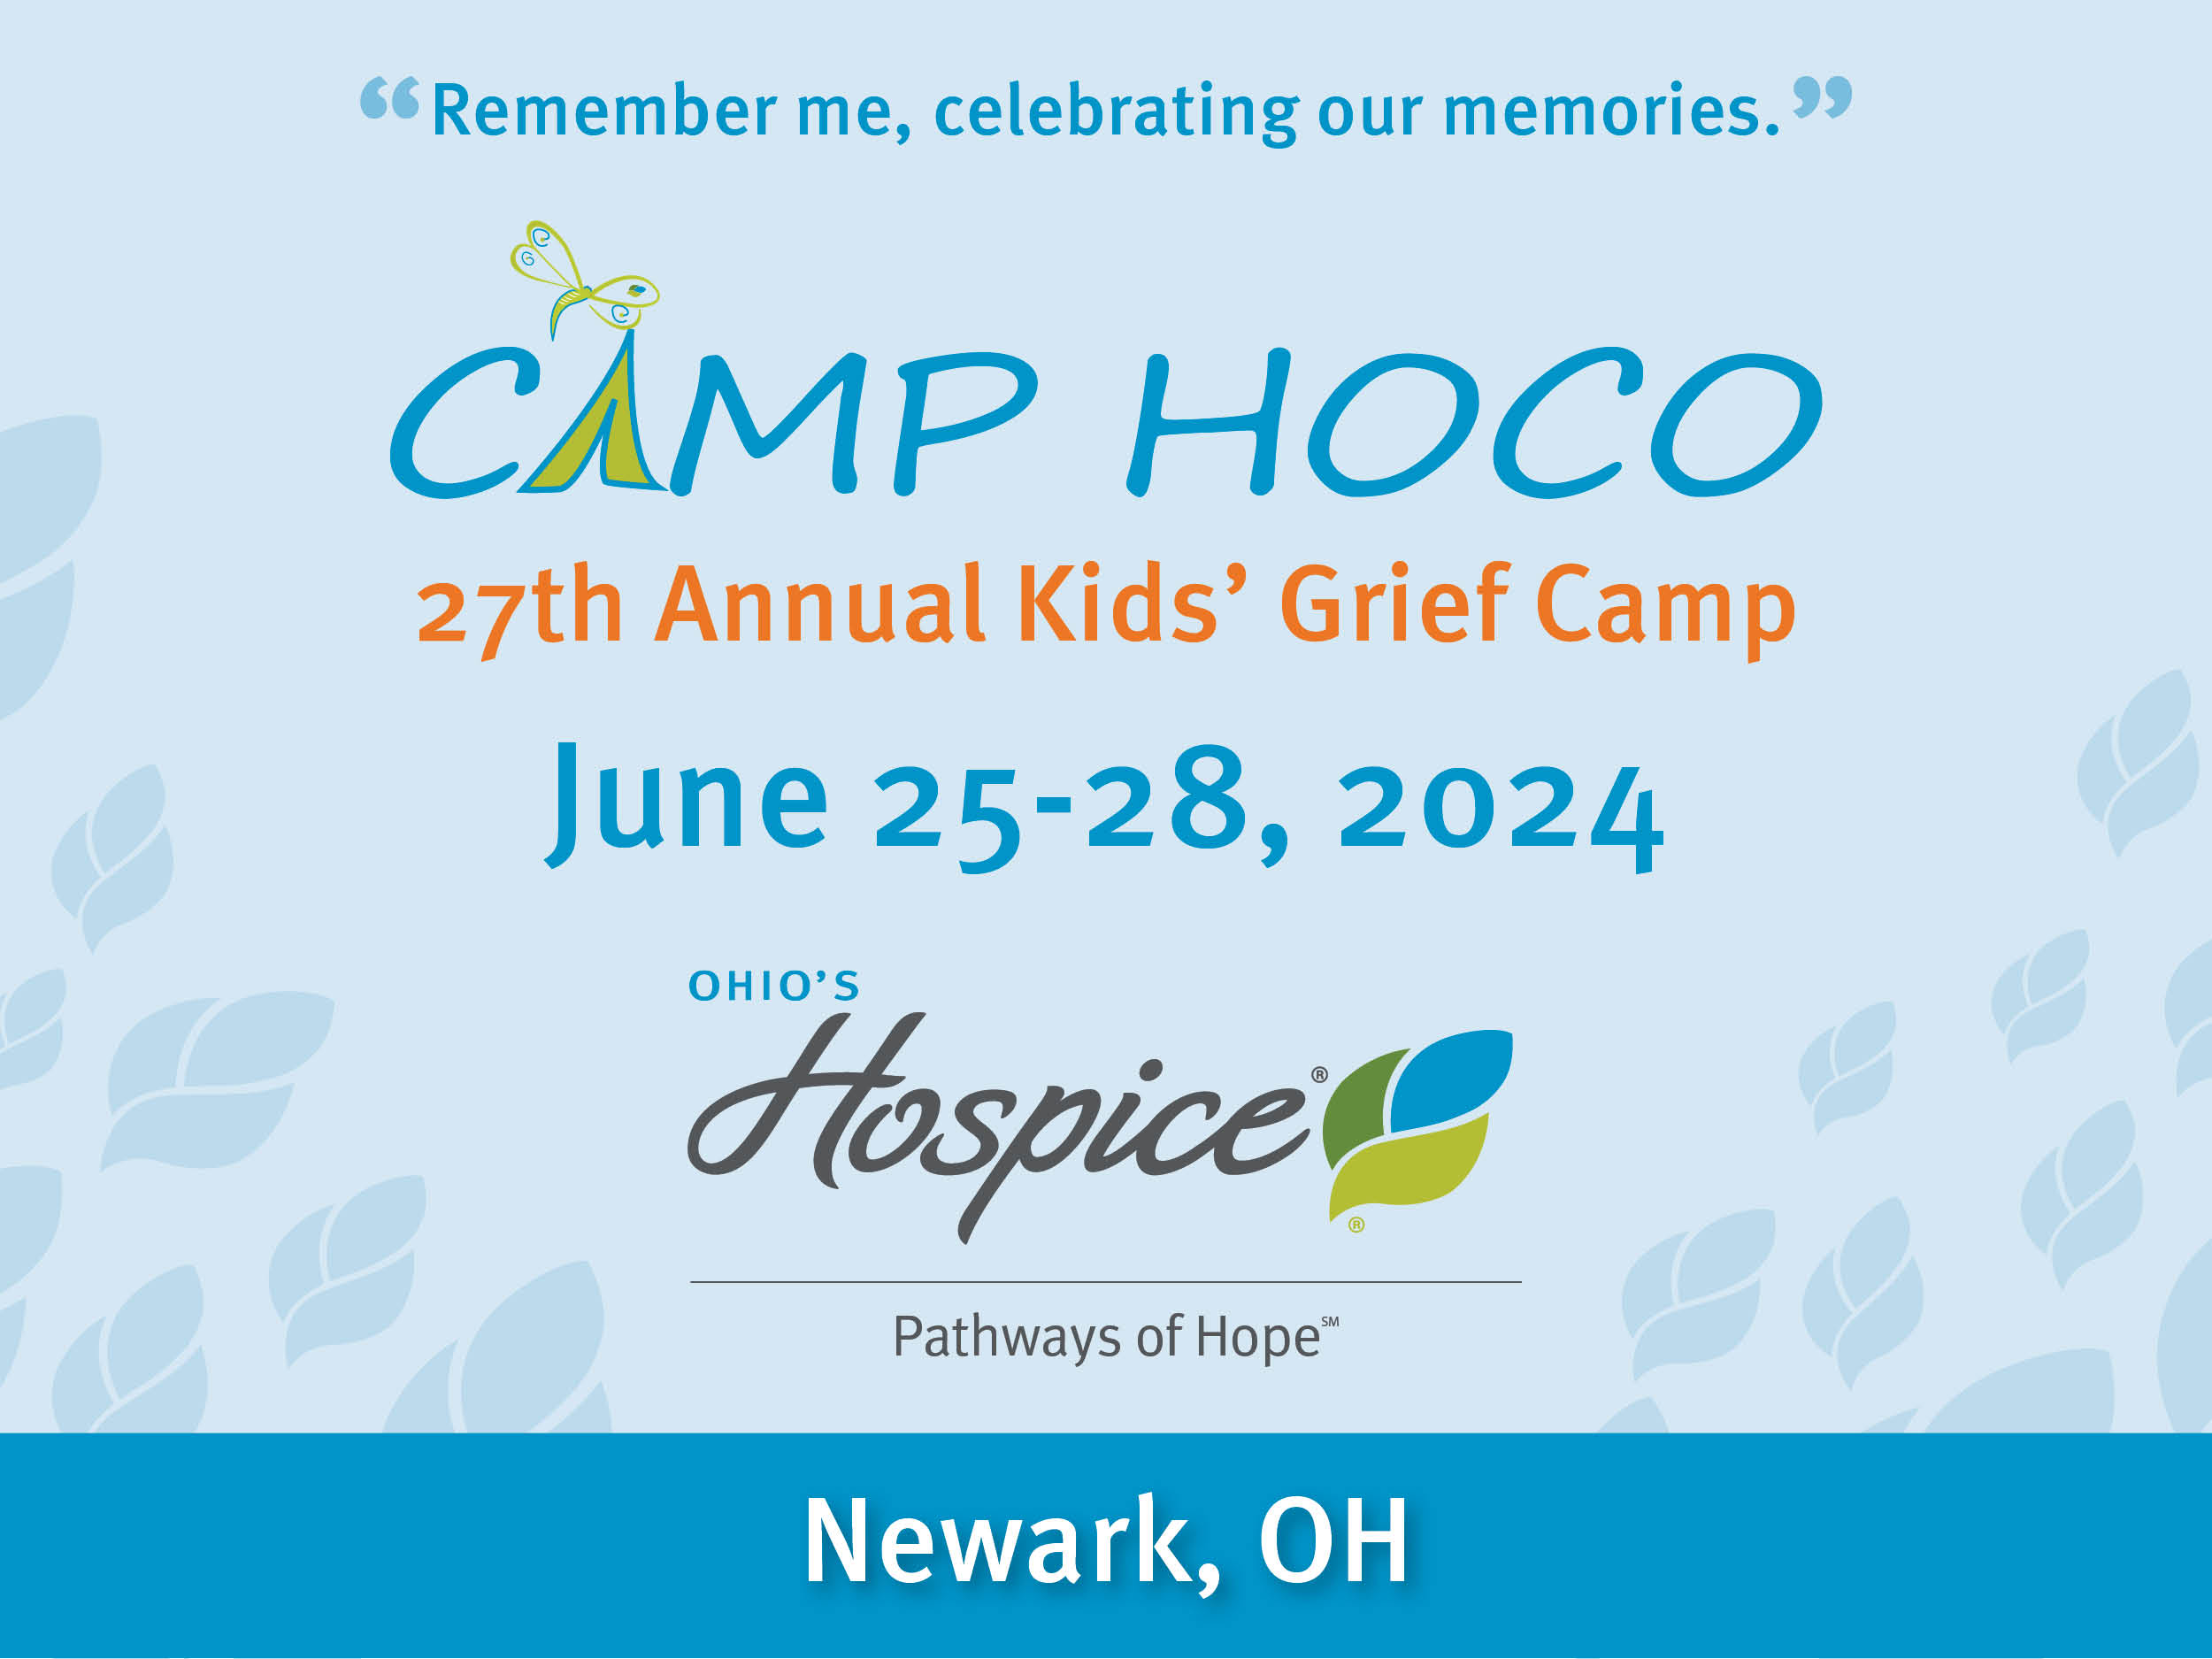 Camp HOCO June 25-28, 2024